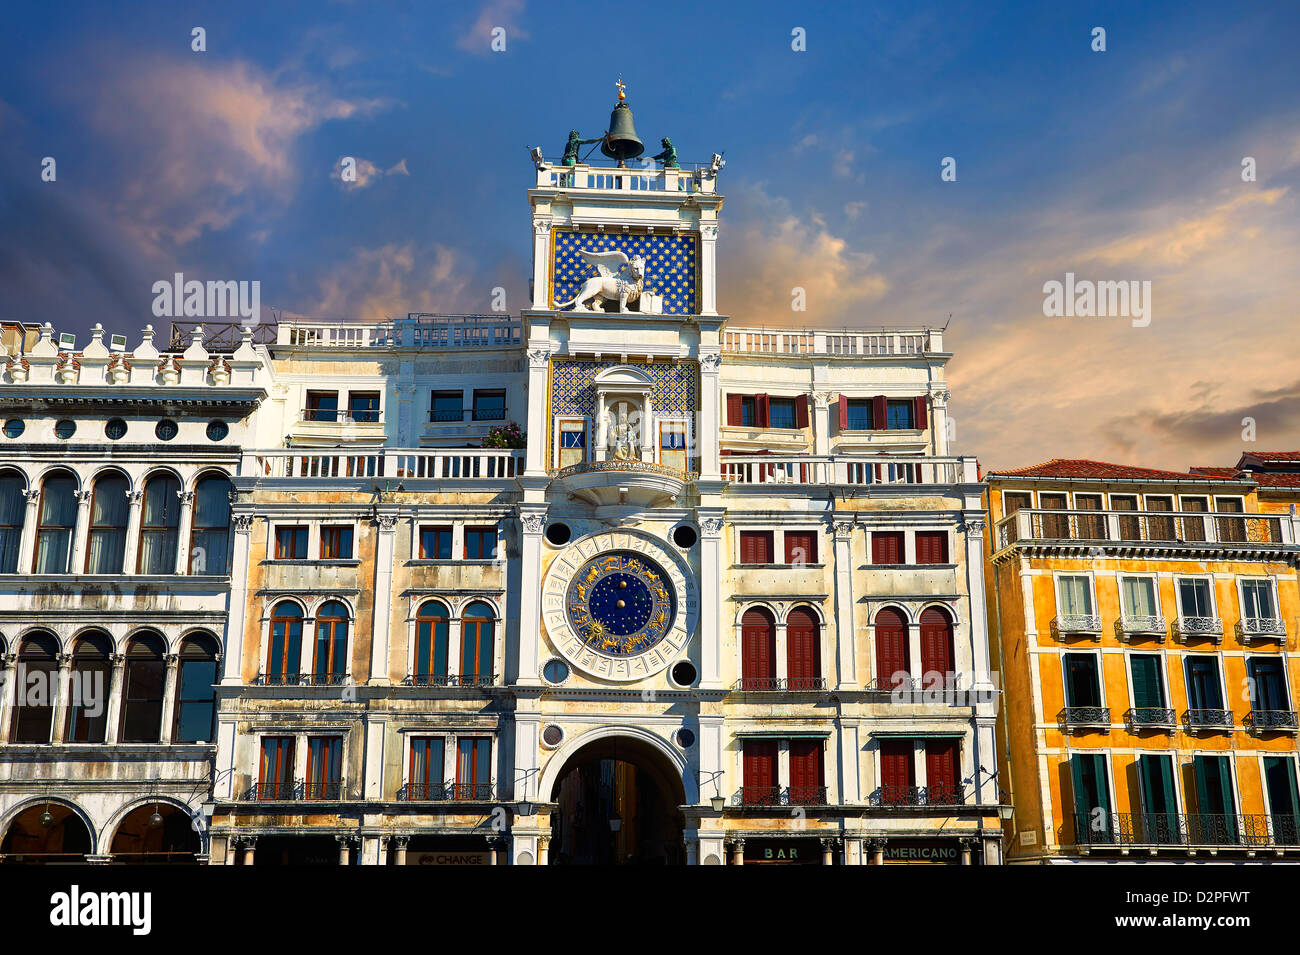 De près de l'horloge astronomique face de la Réveil- Venise Italie Banque D'Images